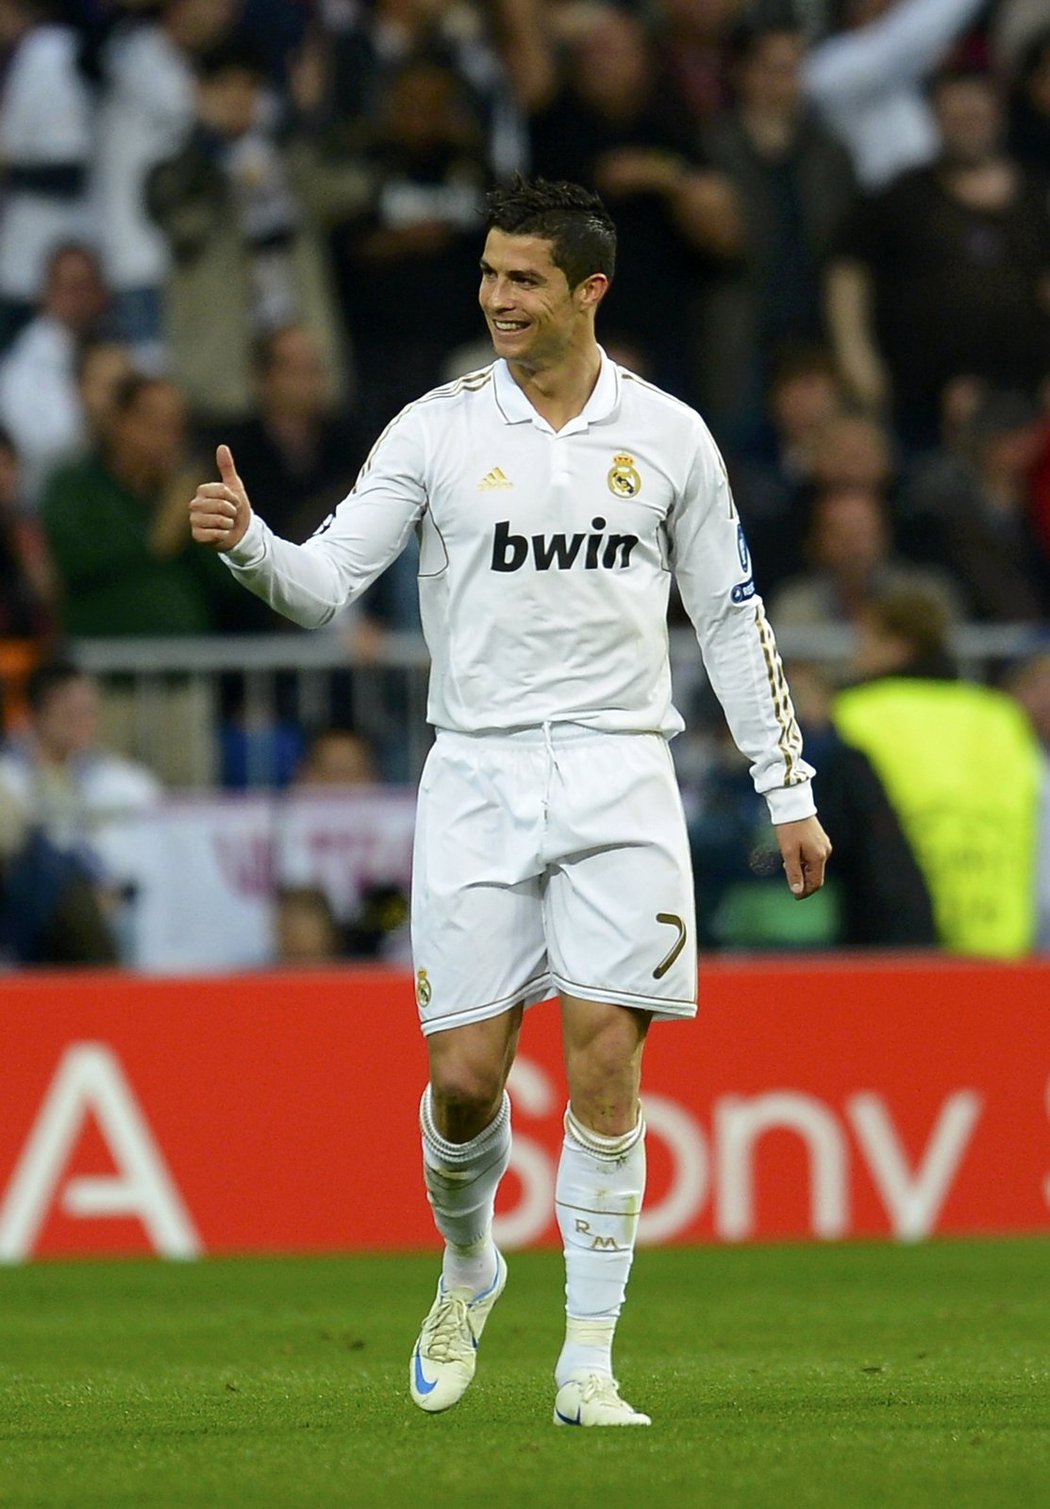 Cristiano Ronaldo se raduje z gólu do sítě Bayernu